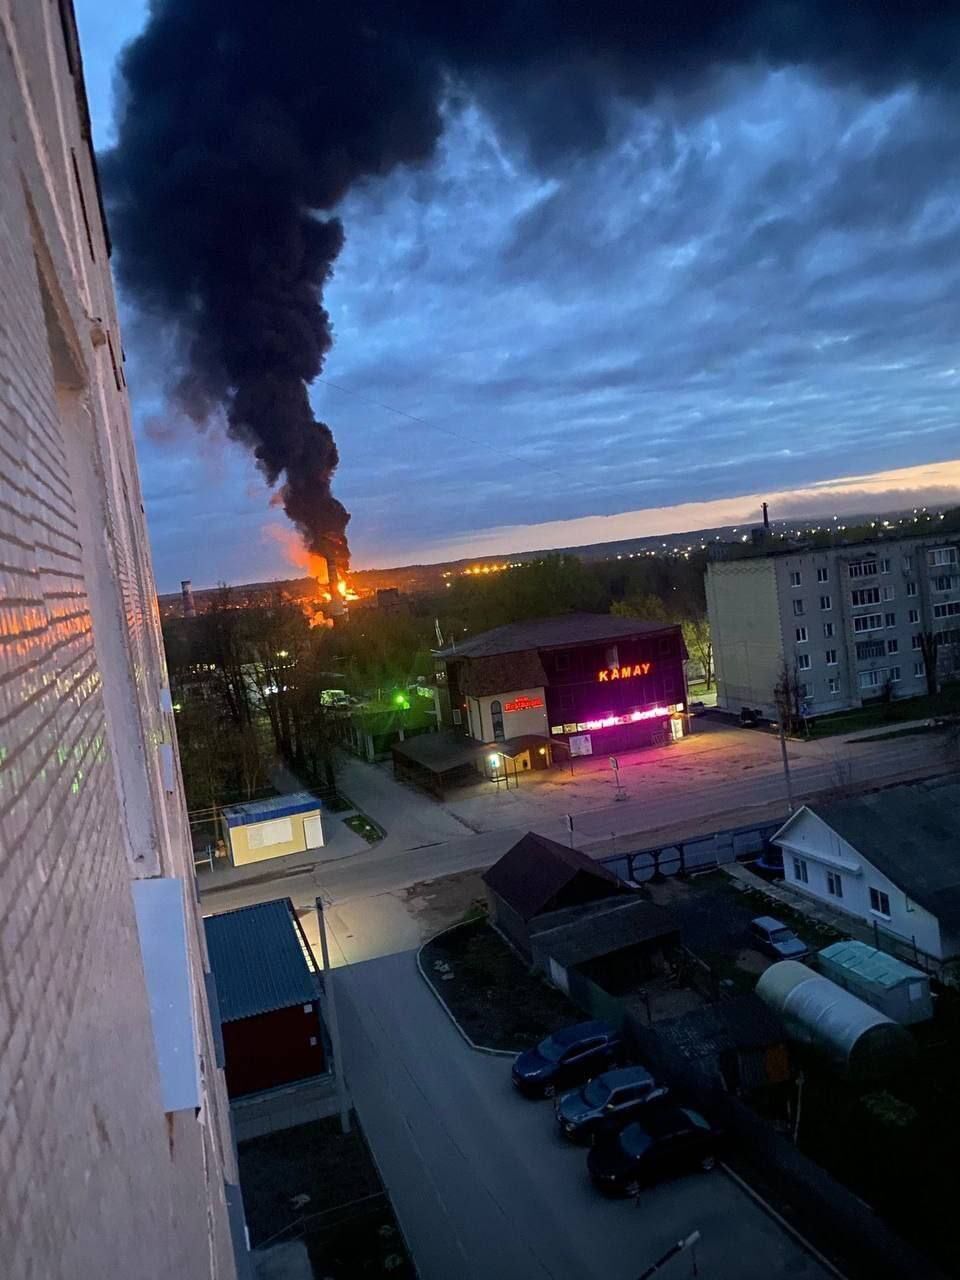 Uderzono w skład ropy naftowej i zakład metalurgiczny, wybuchły pożary: Rosja skarży się na kolejny nocny atak dronów. Wideo